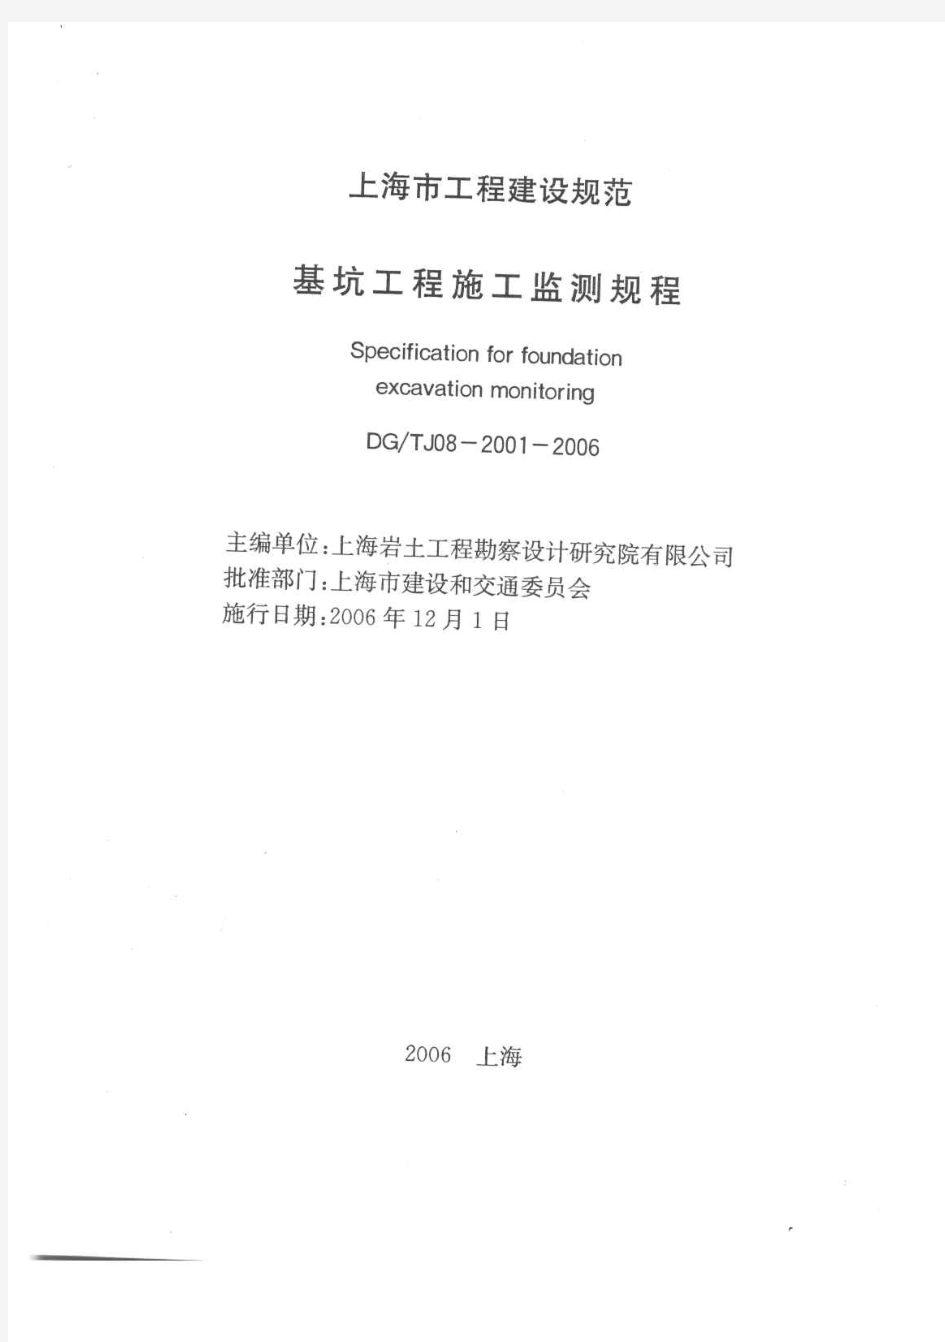 【上海市工程建设规范】基坑工程施工监测规程(DGTJ08-2001-2006)